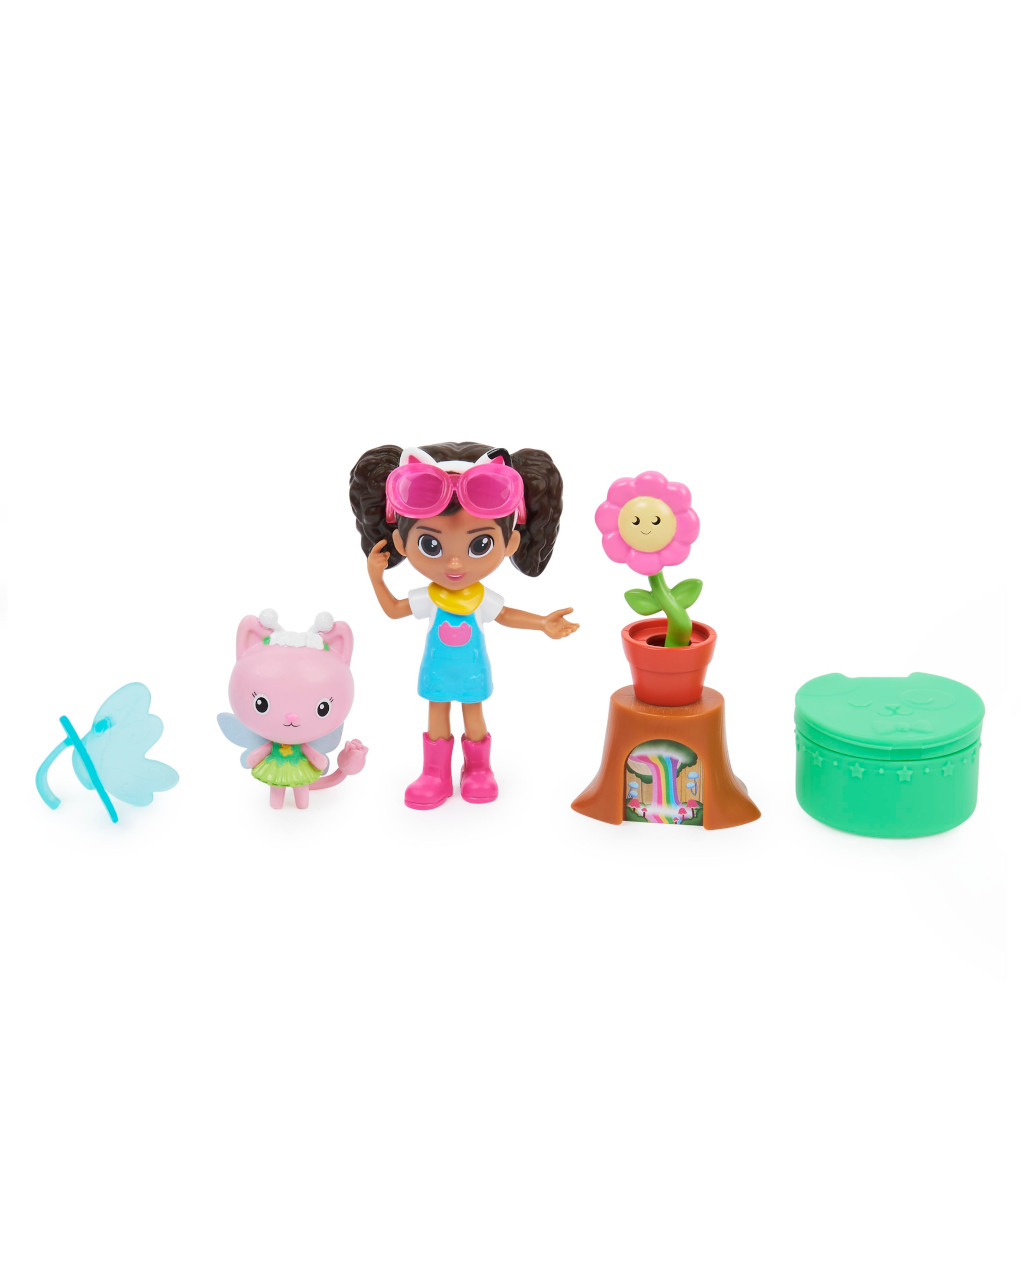 Gabby's dollhouse - pack 2 personaggi e accessori (articolo assortito) - spin master - GABBY